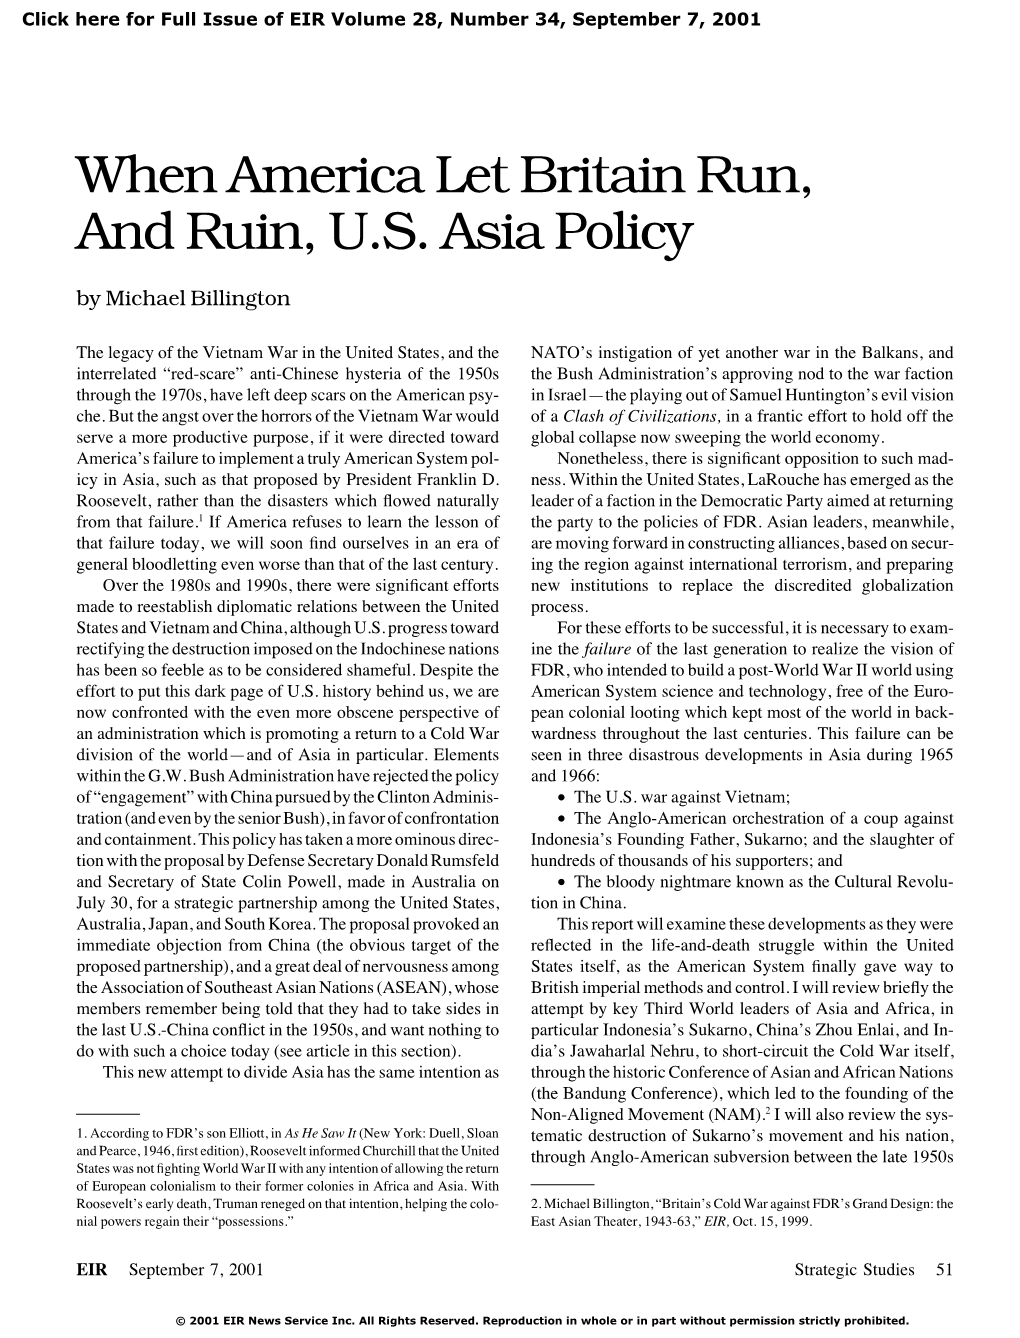 When America Let Britain Run, and Ruin, U.S. Asia Policy